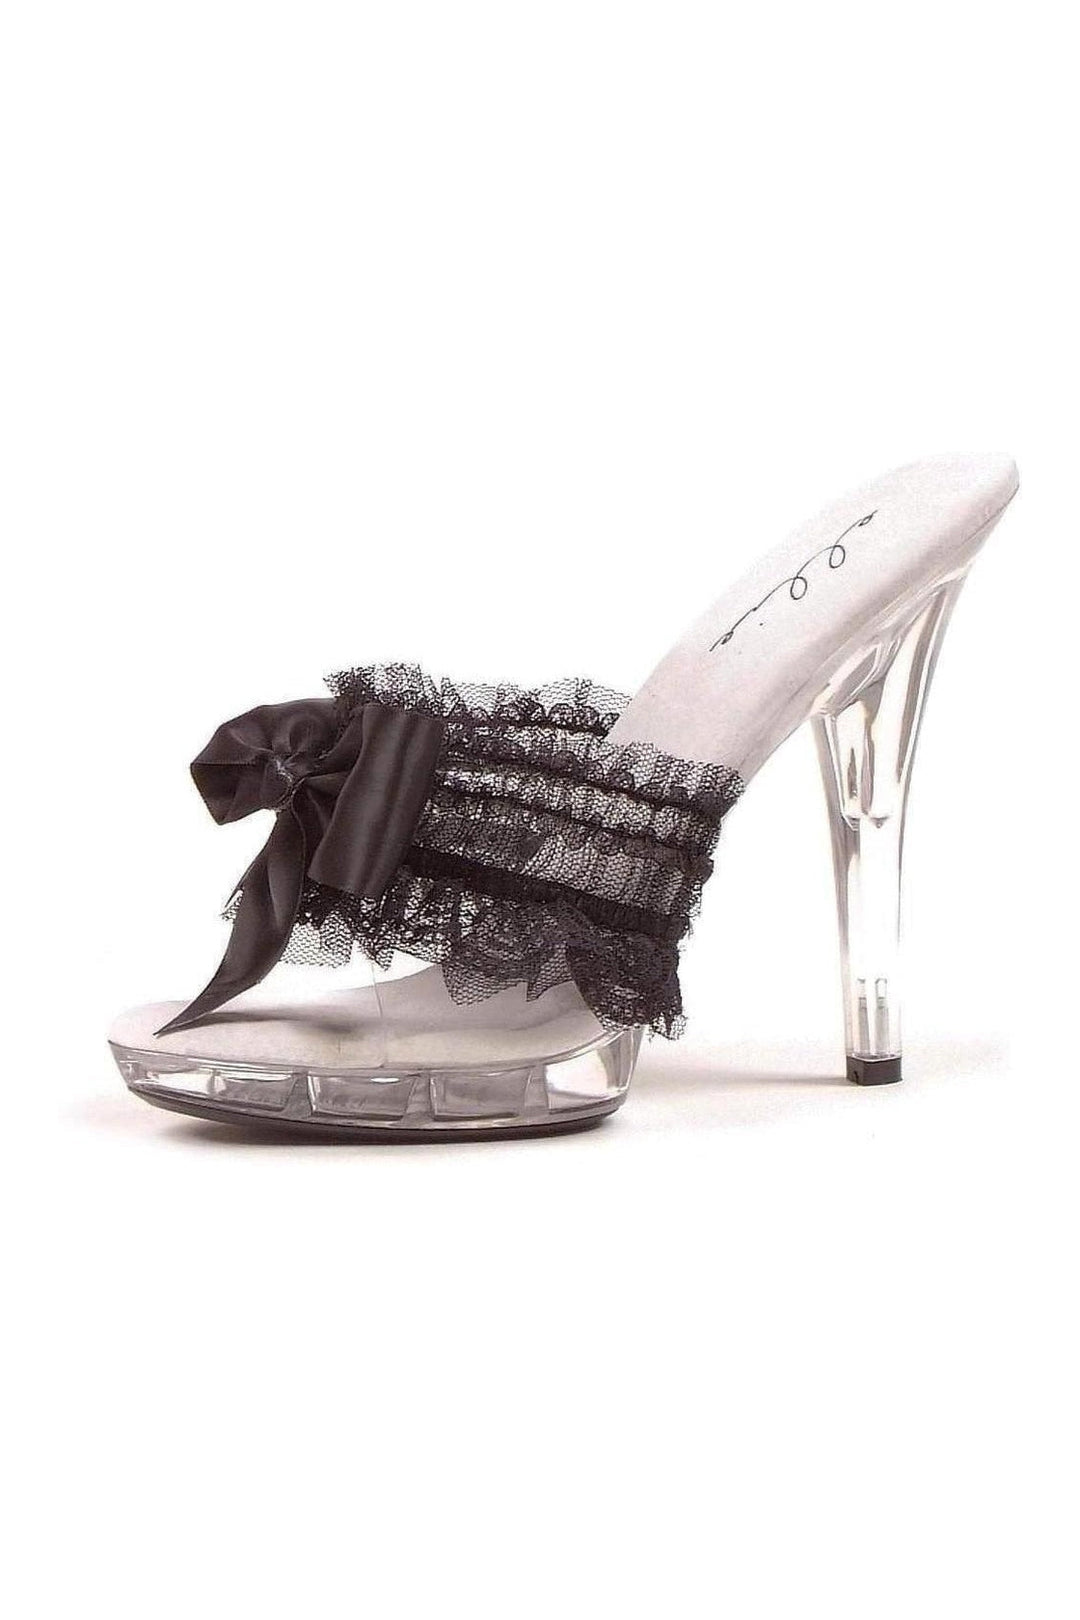 M-CUTIE Platform Slide | Black Patent-Ellie Shoes-SEXYSHOES.COM